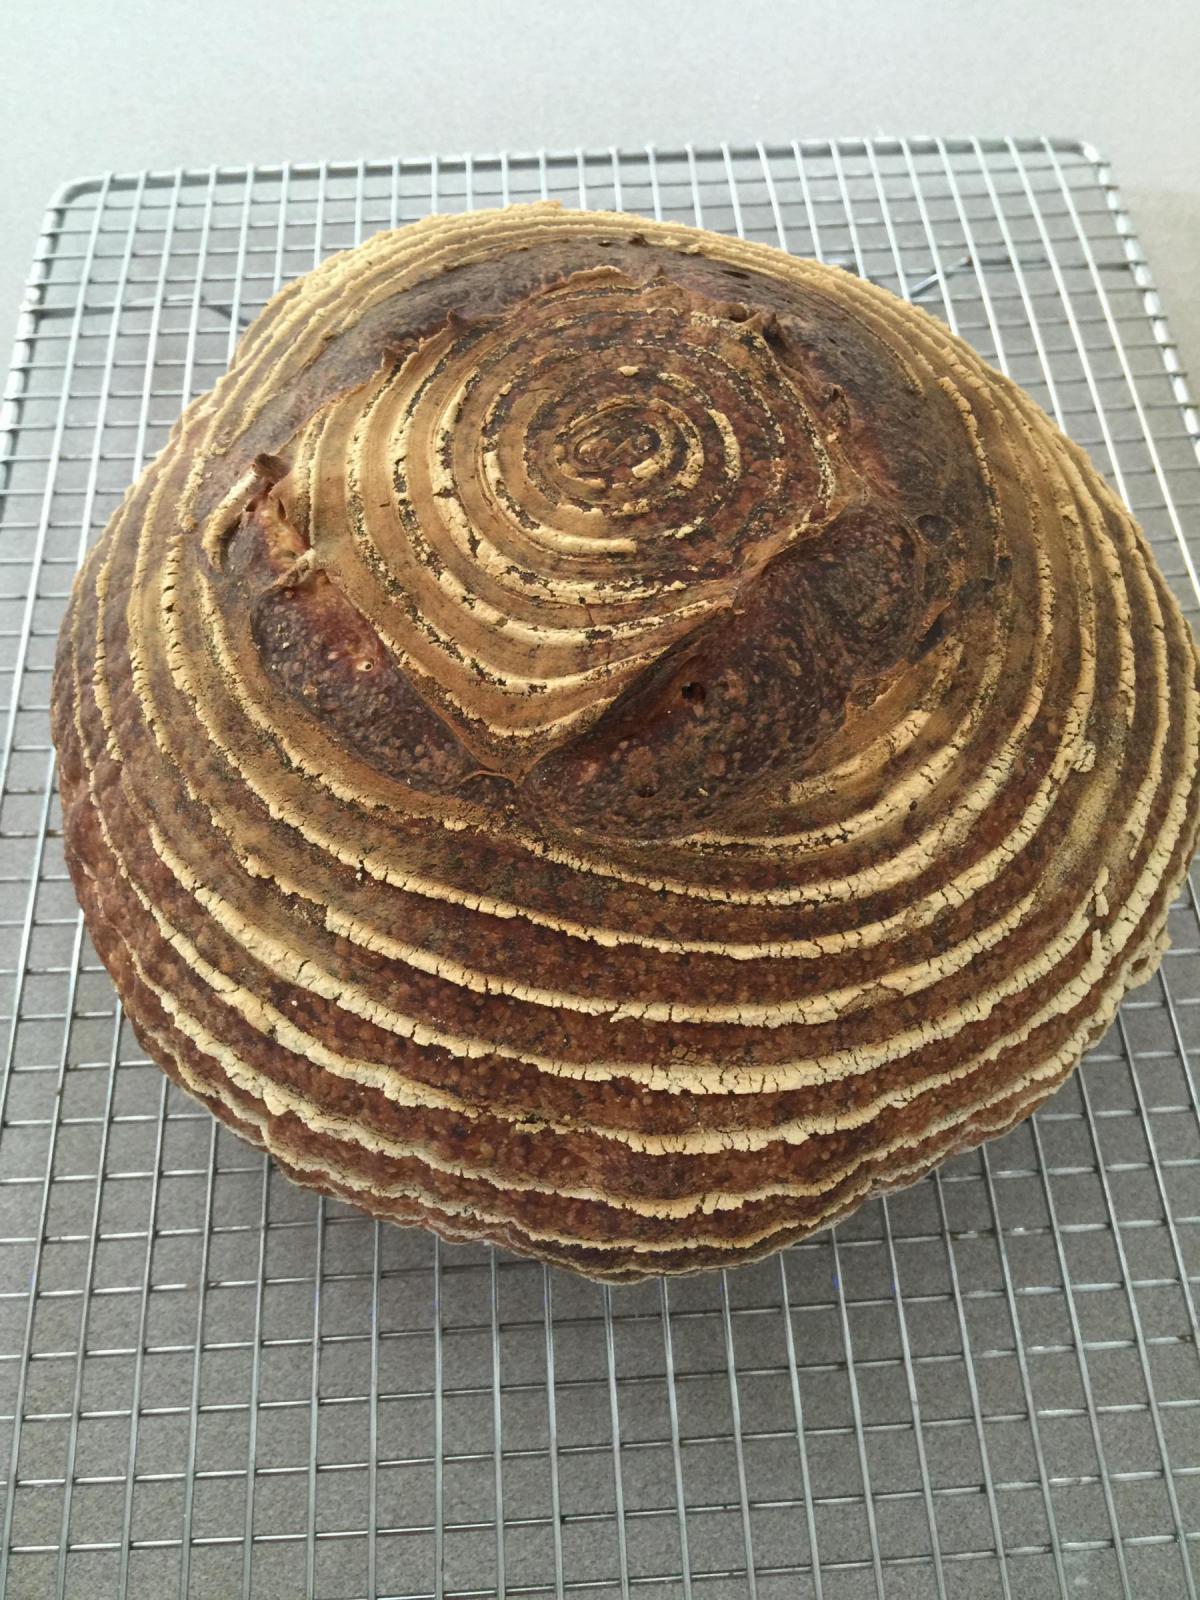 Finished loaf